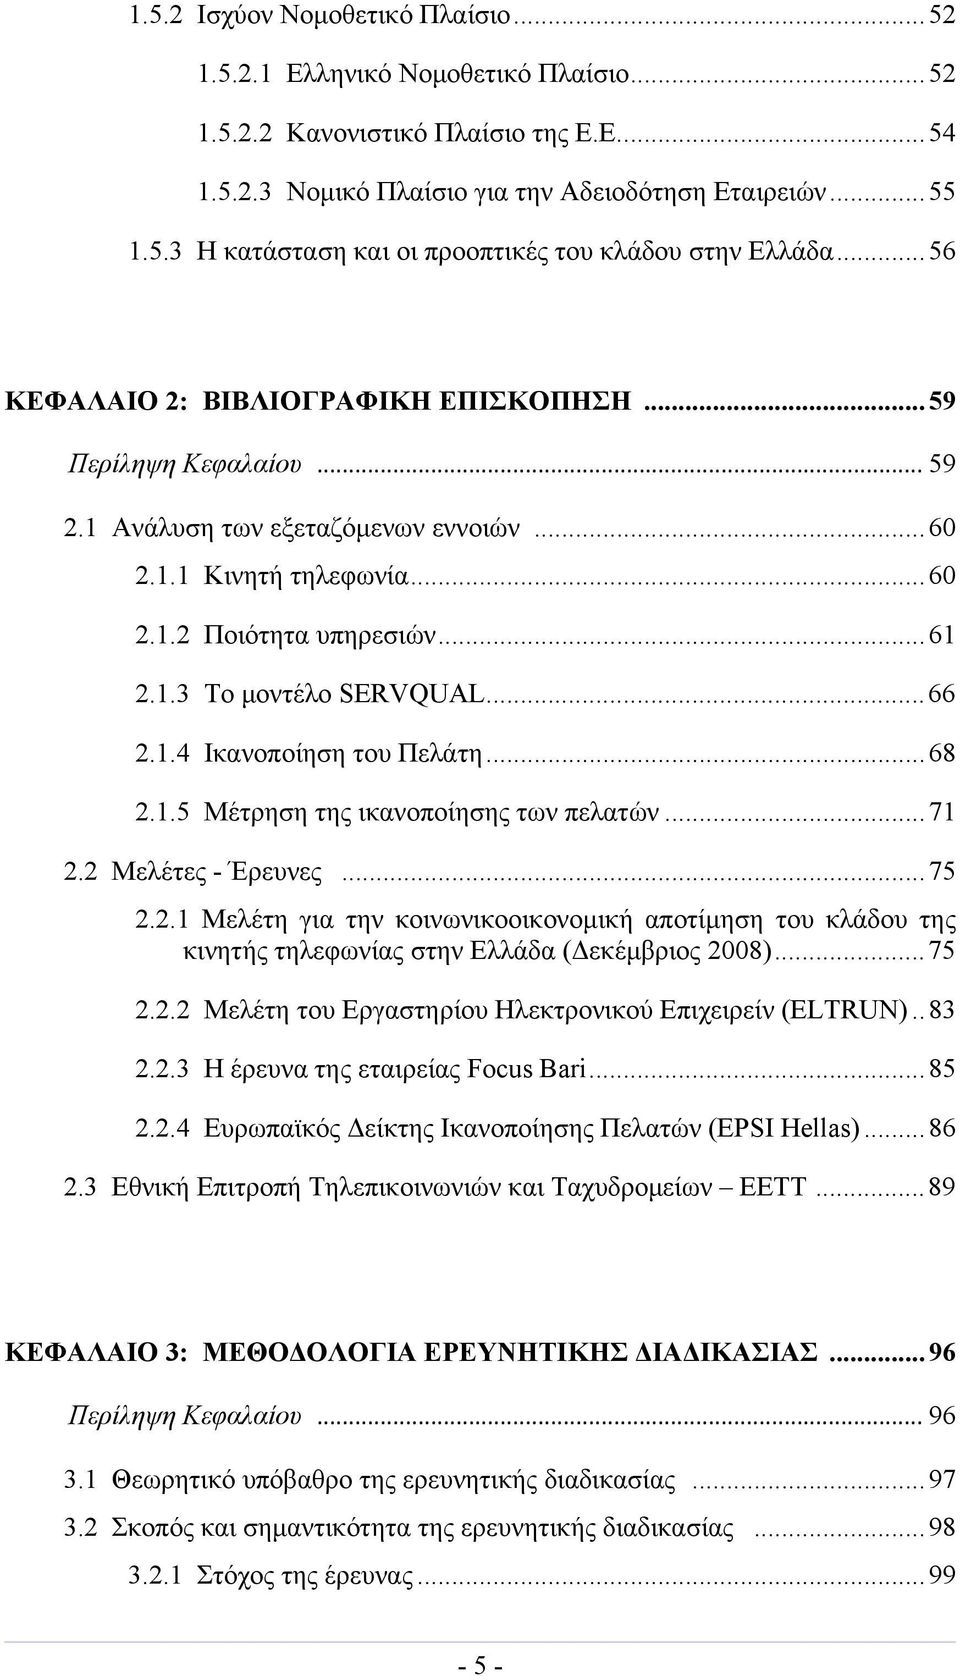 ..66 2.1.4 Ικανοποίηση του Πελάτη...68 2.1.5 Μέτρηση της ικανοποίησης των πελατών...71 2.2 Μελέτες - Έρευνες...75 2.2.1 Μελέτη για την κοινωνικοοικονομική αποτίμηση του κλάδου της κινητής τηλεφωνίας στην Ελλάδα (Δεκέμβριος 2008).